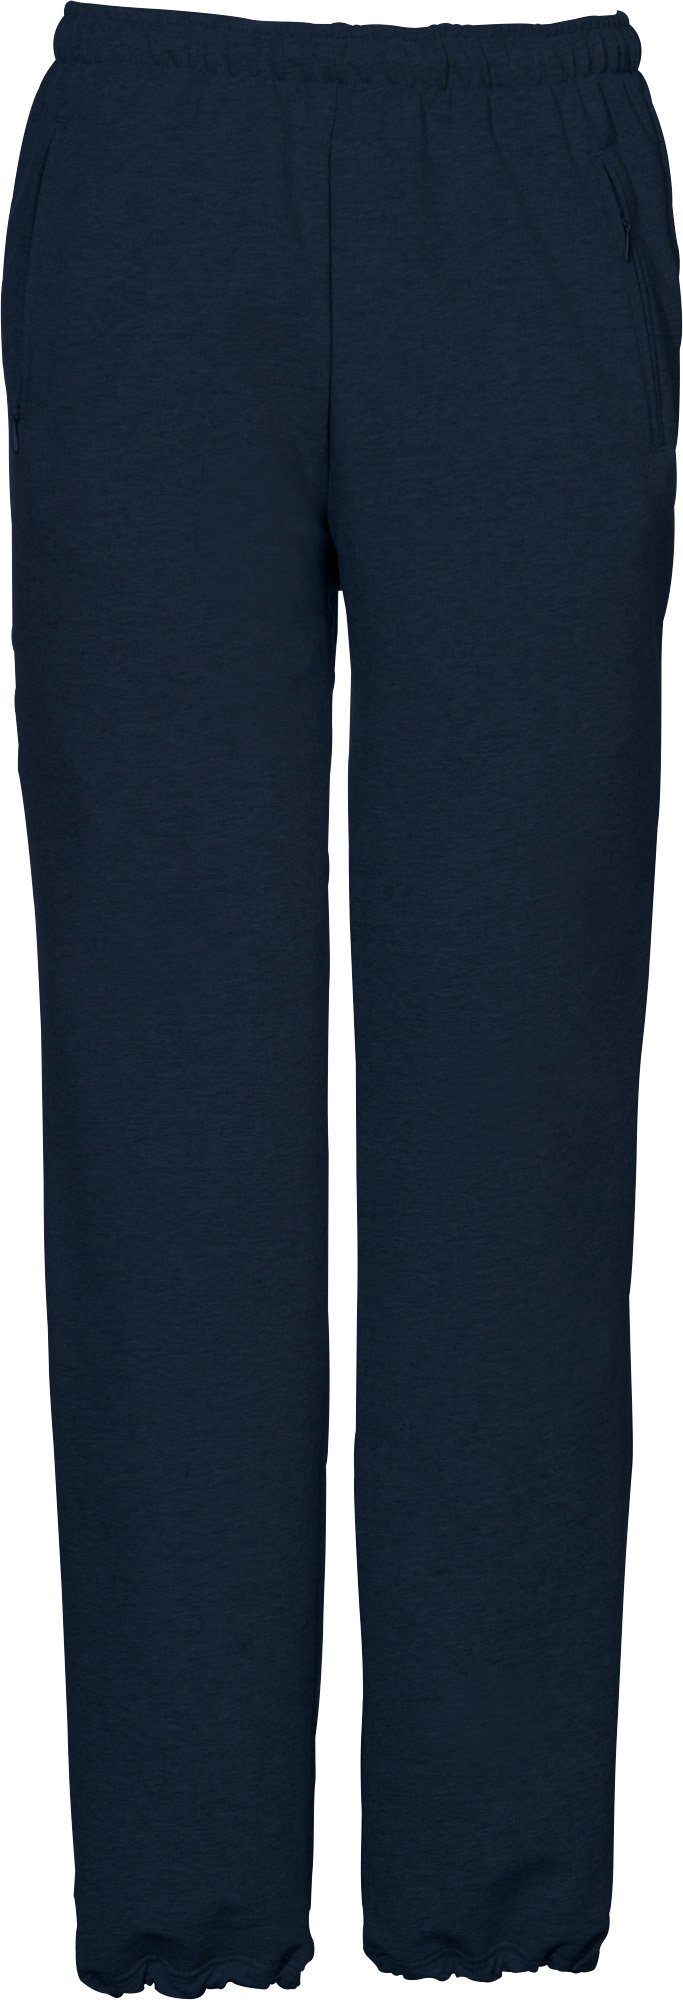 Sportswear Uni SCHNEIDER "HORGENM", dunkelblau Jogginghose lang Herren-Freizeithose